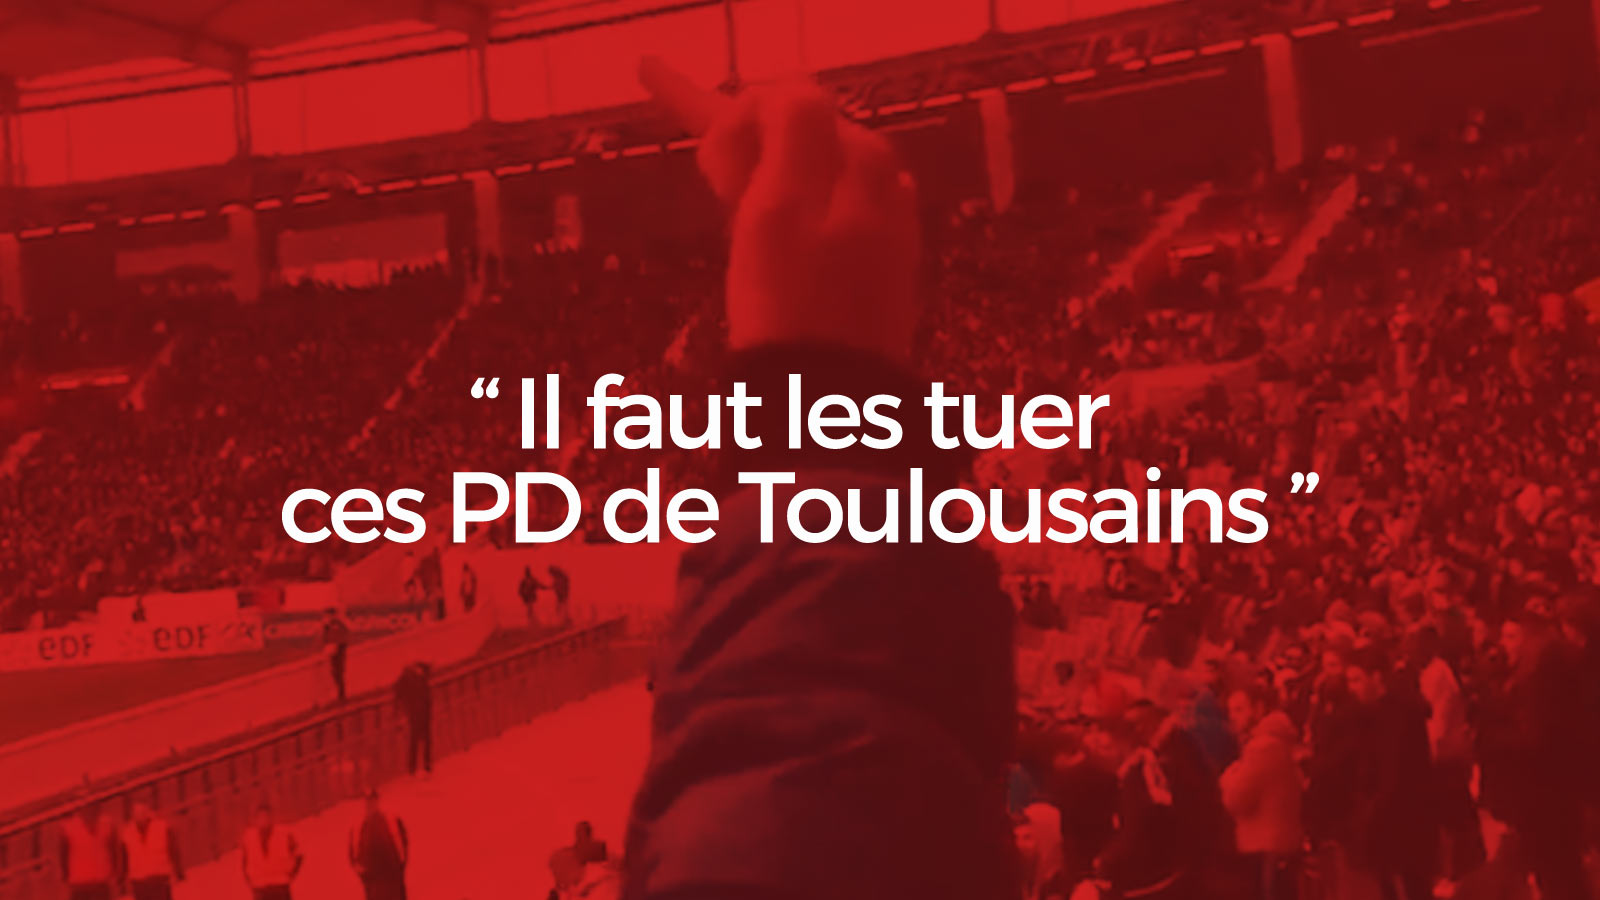 « Il faut les tuer ces PD de Toulousains » : L'impunité quotidienne dans les stades, maintenant çà suffit ! (VIDEO)